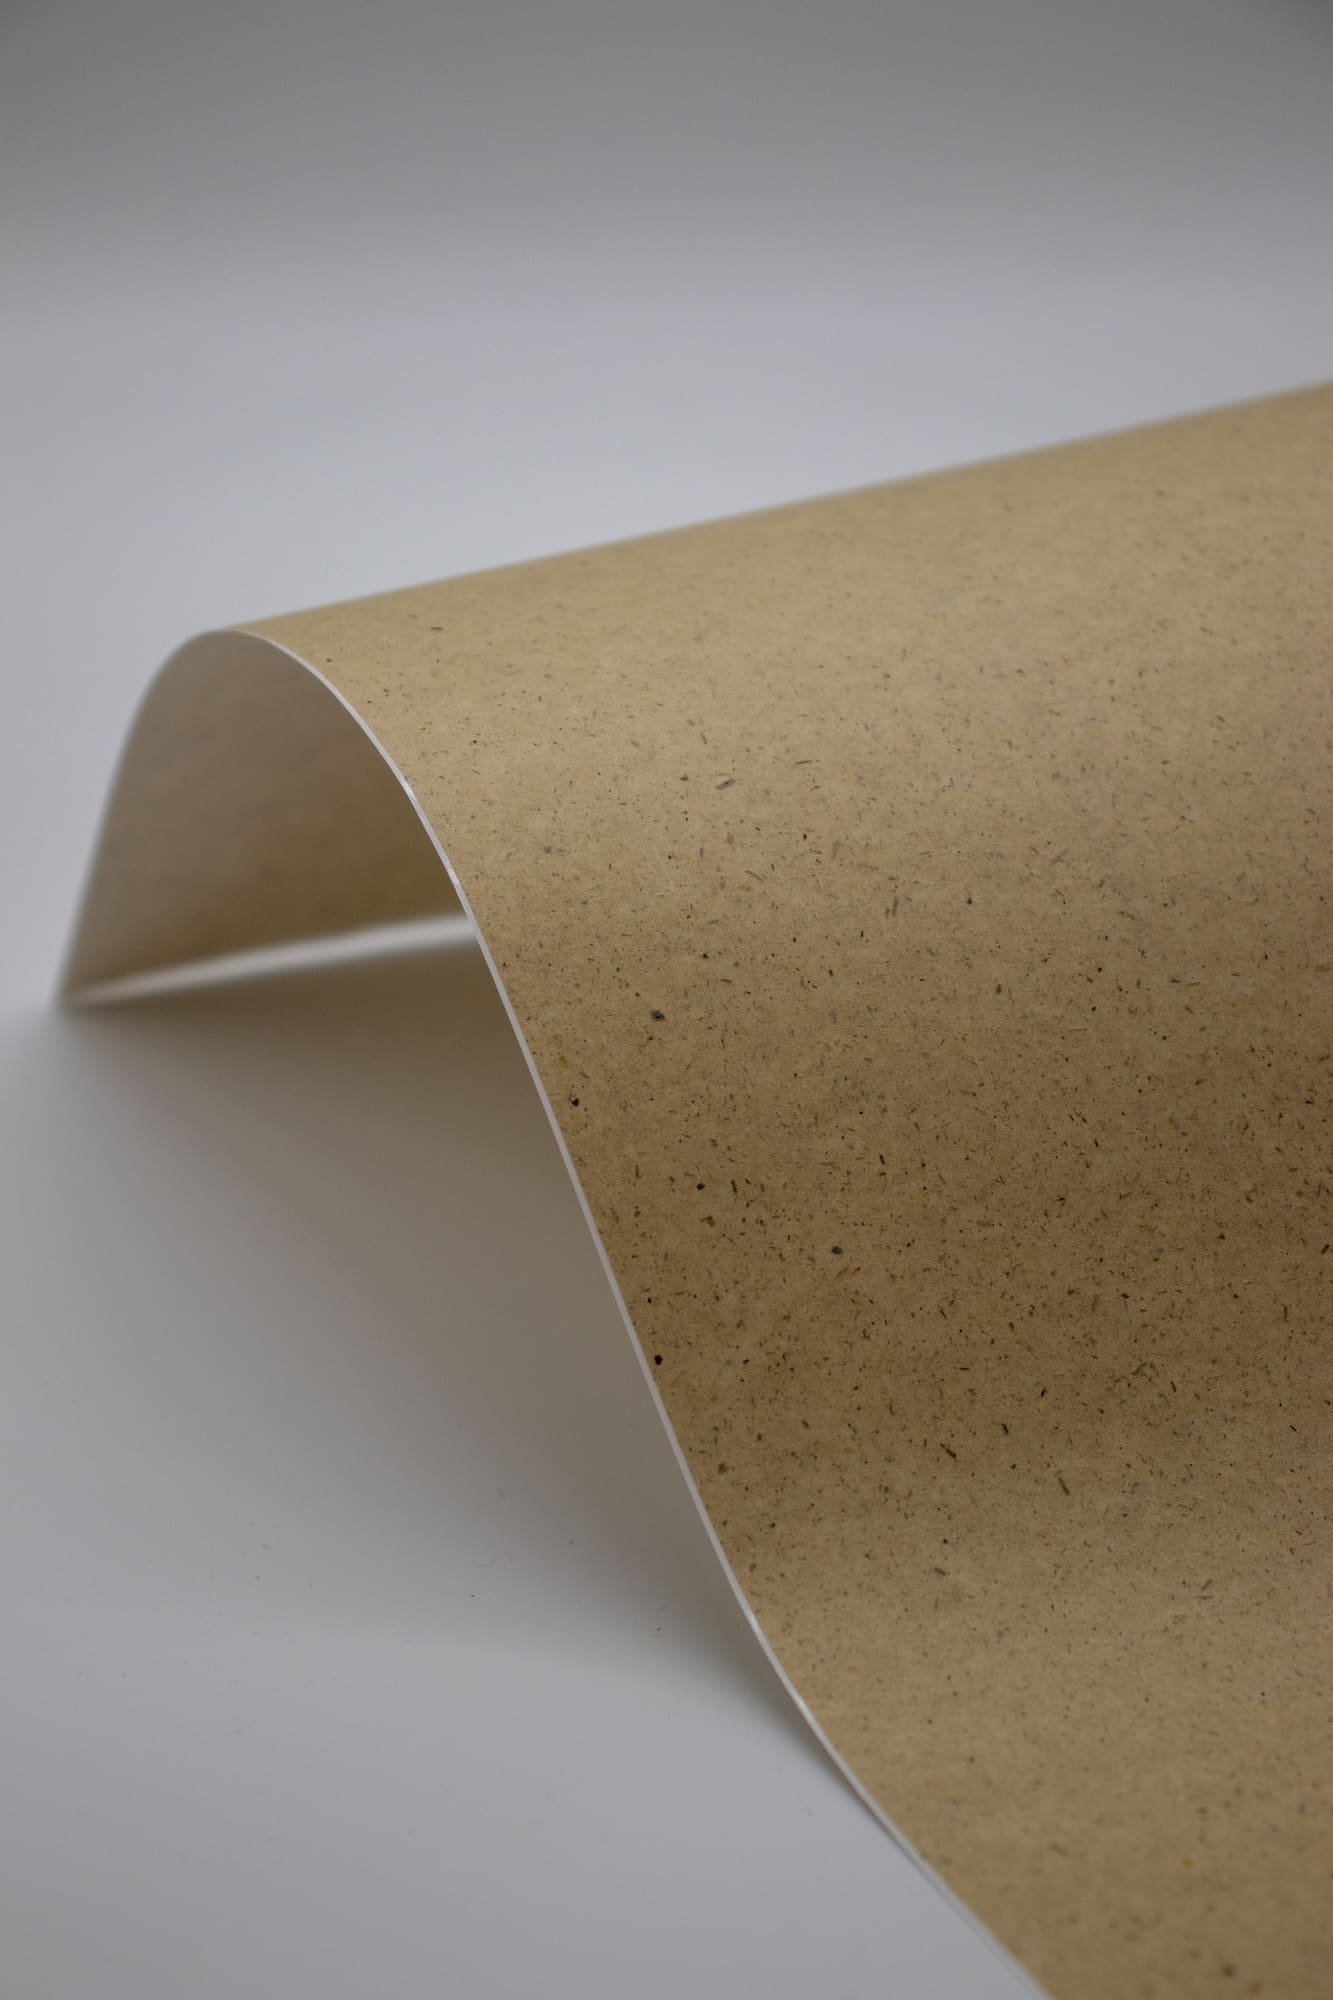 ENDI-HAFT Graspapier Etiketten, 10 mm rund auf DIN A4 Bögen